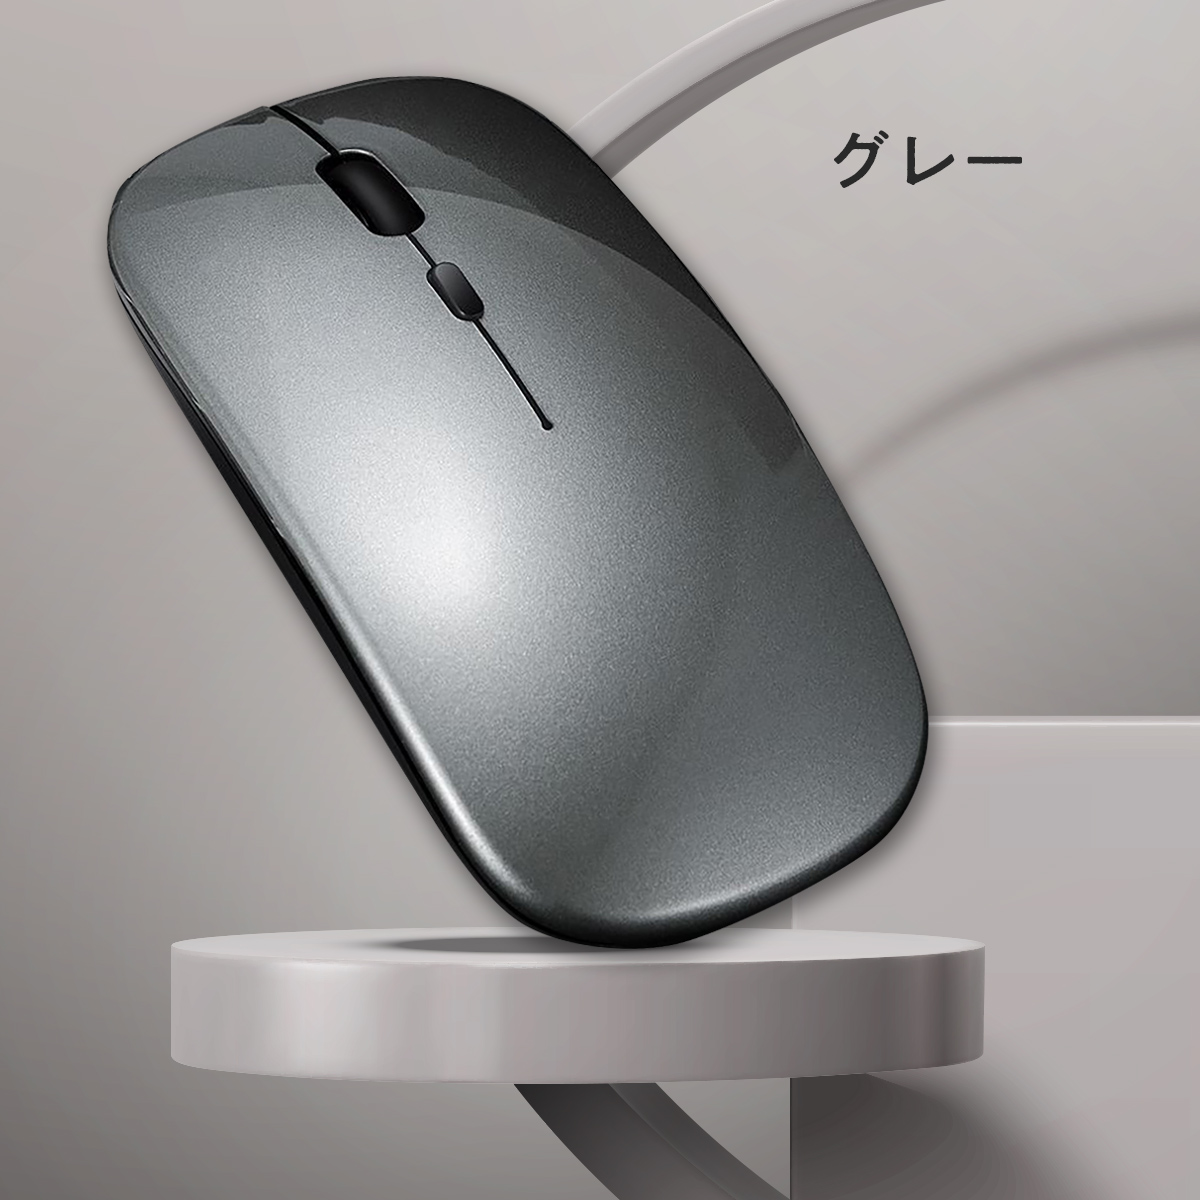 マウス Bluetooth 無線 ワイヤレスマウス 充電式 静音 光学式 超薄型